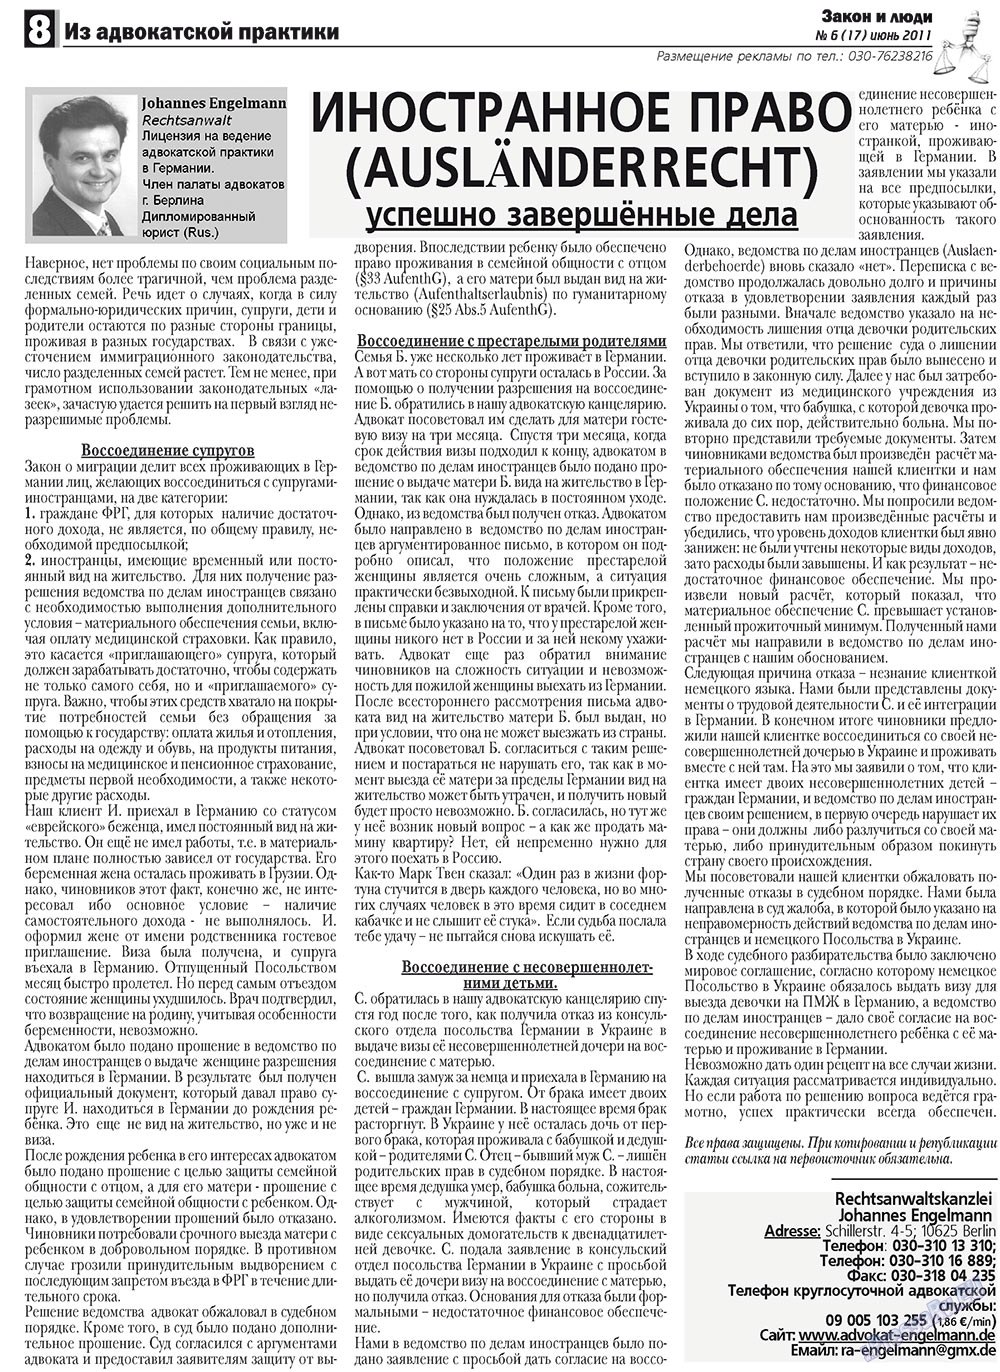 Закон и люди, газета. 2011 №6 стр.8